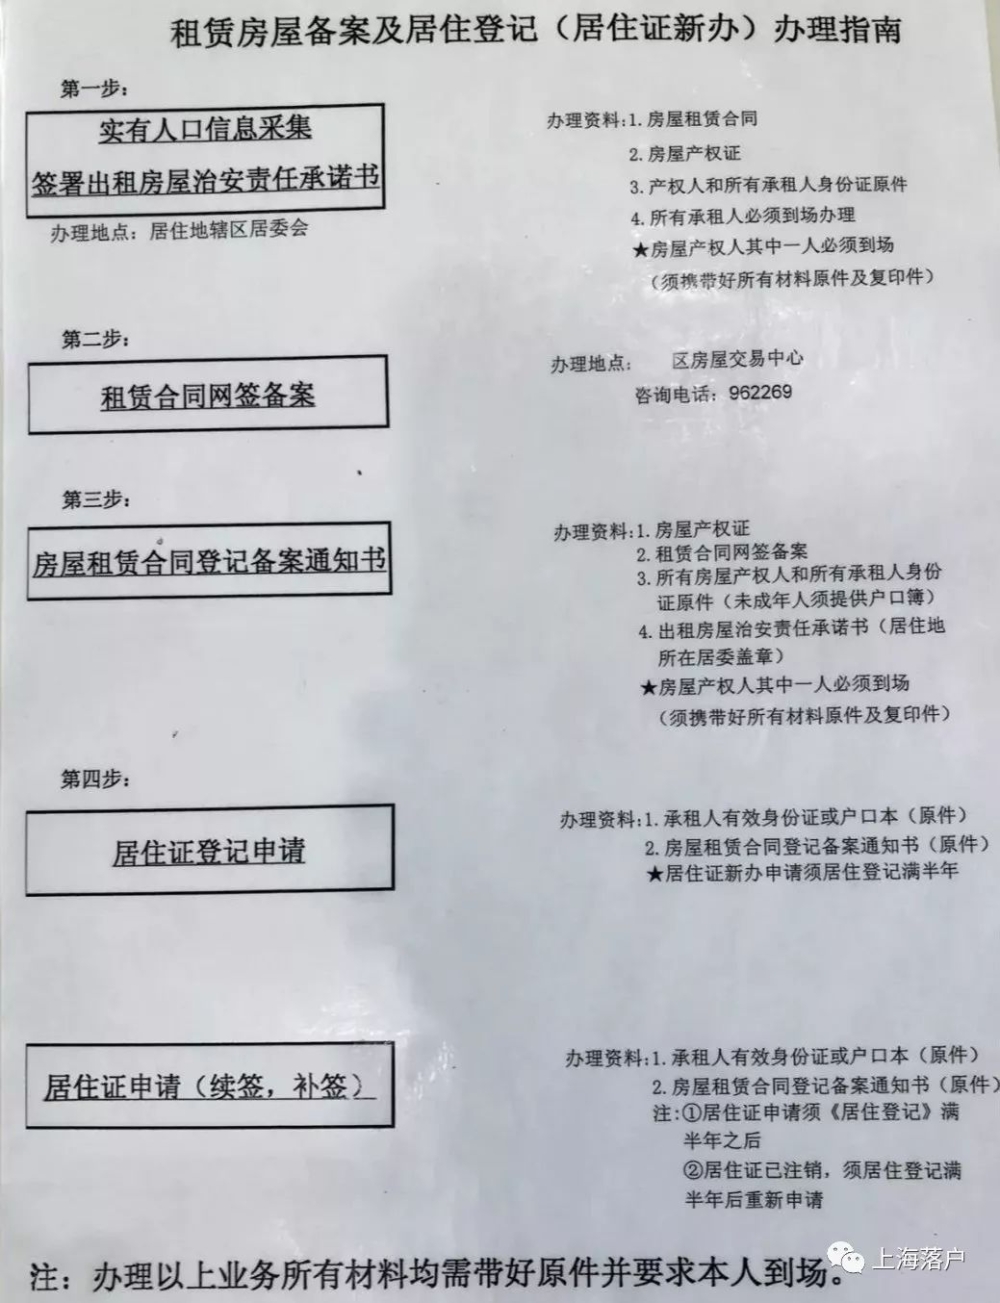 上海居住证作用大,居住登记、居住证新办、续办最新指南来啦